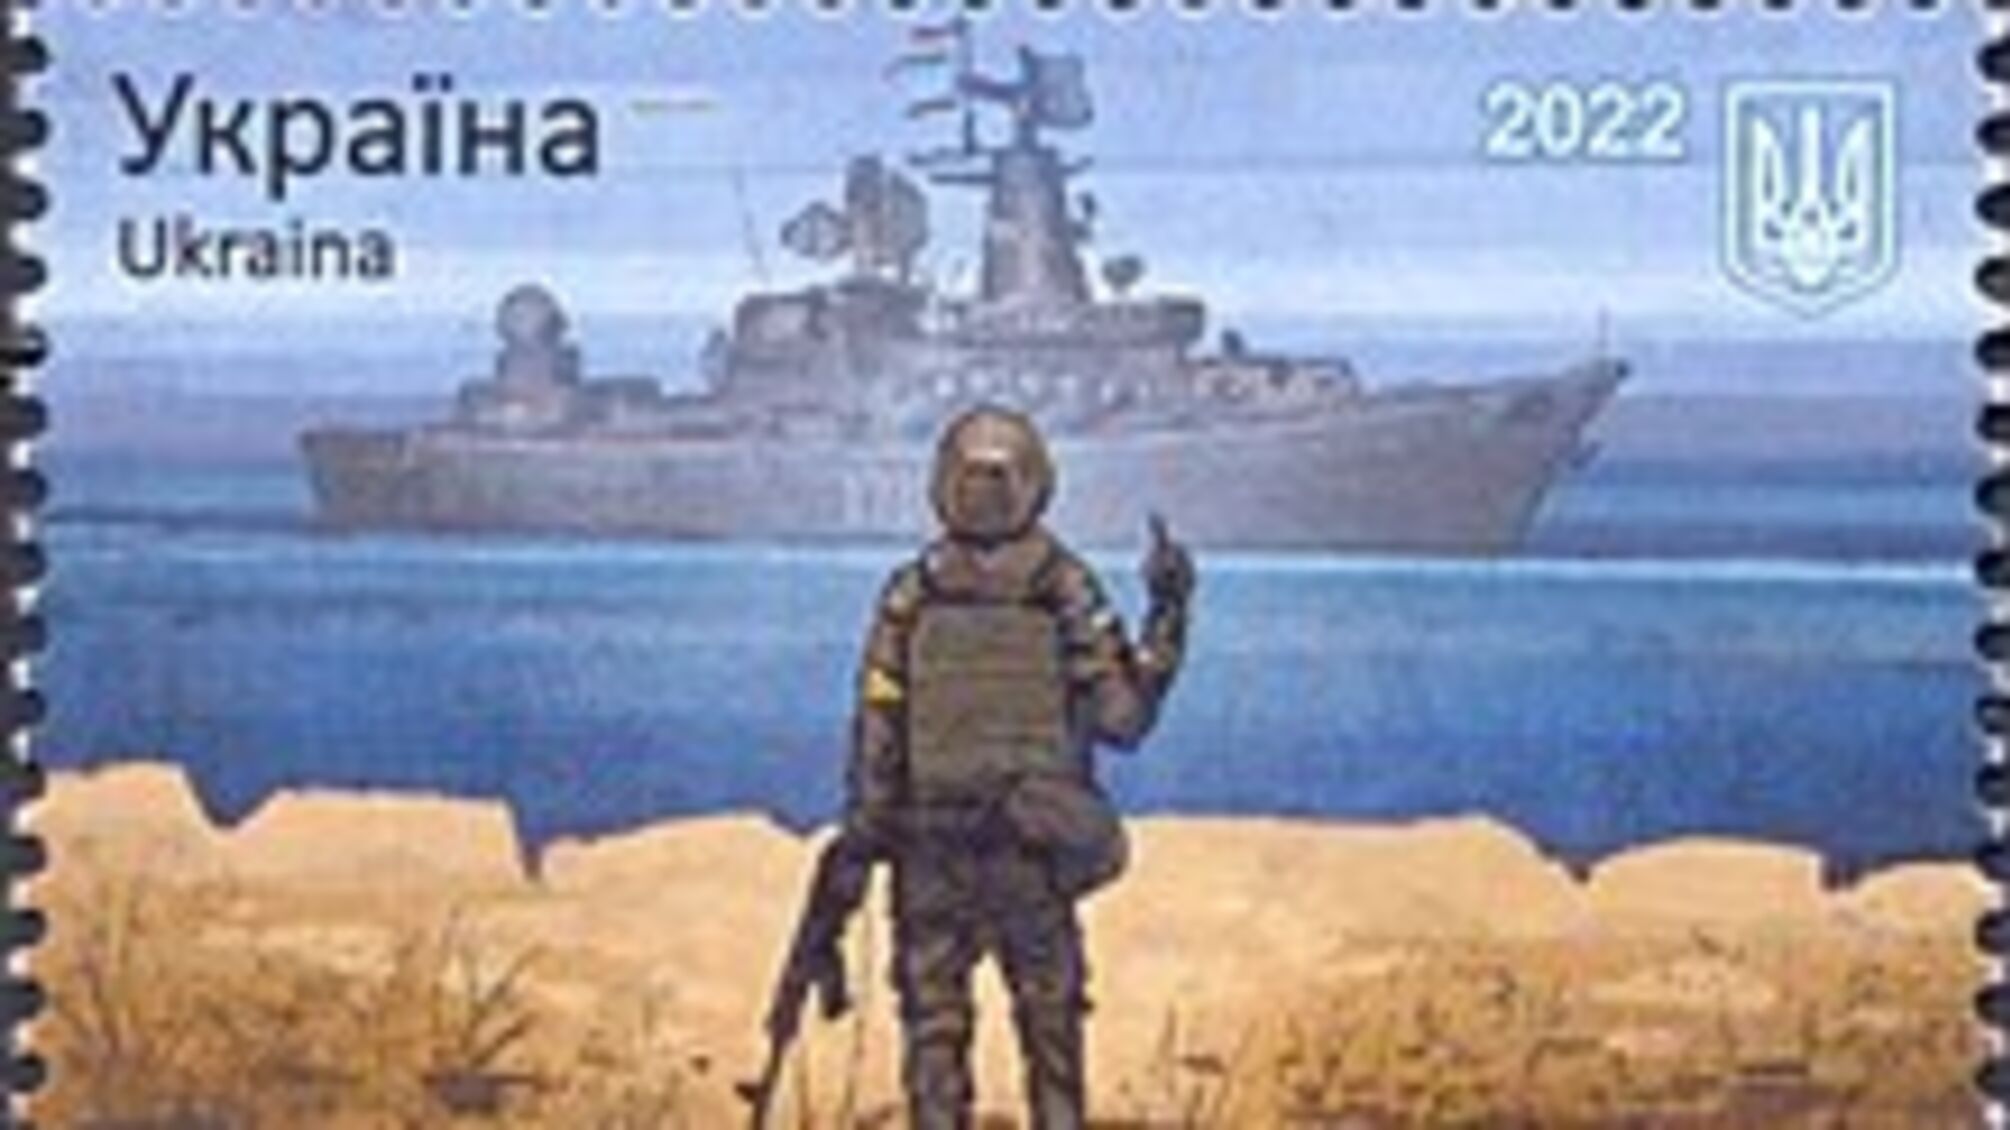 Знову вкрали ідею: росія випустила поштову марку з дизайном, ідентичним до українського 'русского корабля' (фото) 